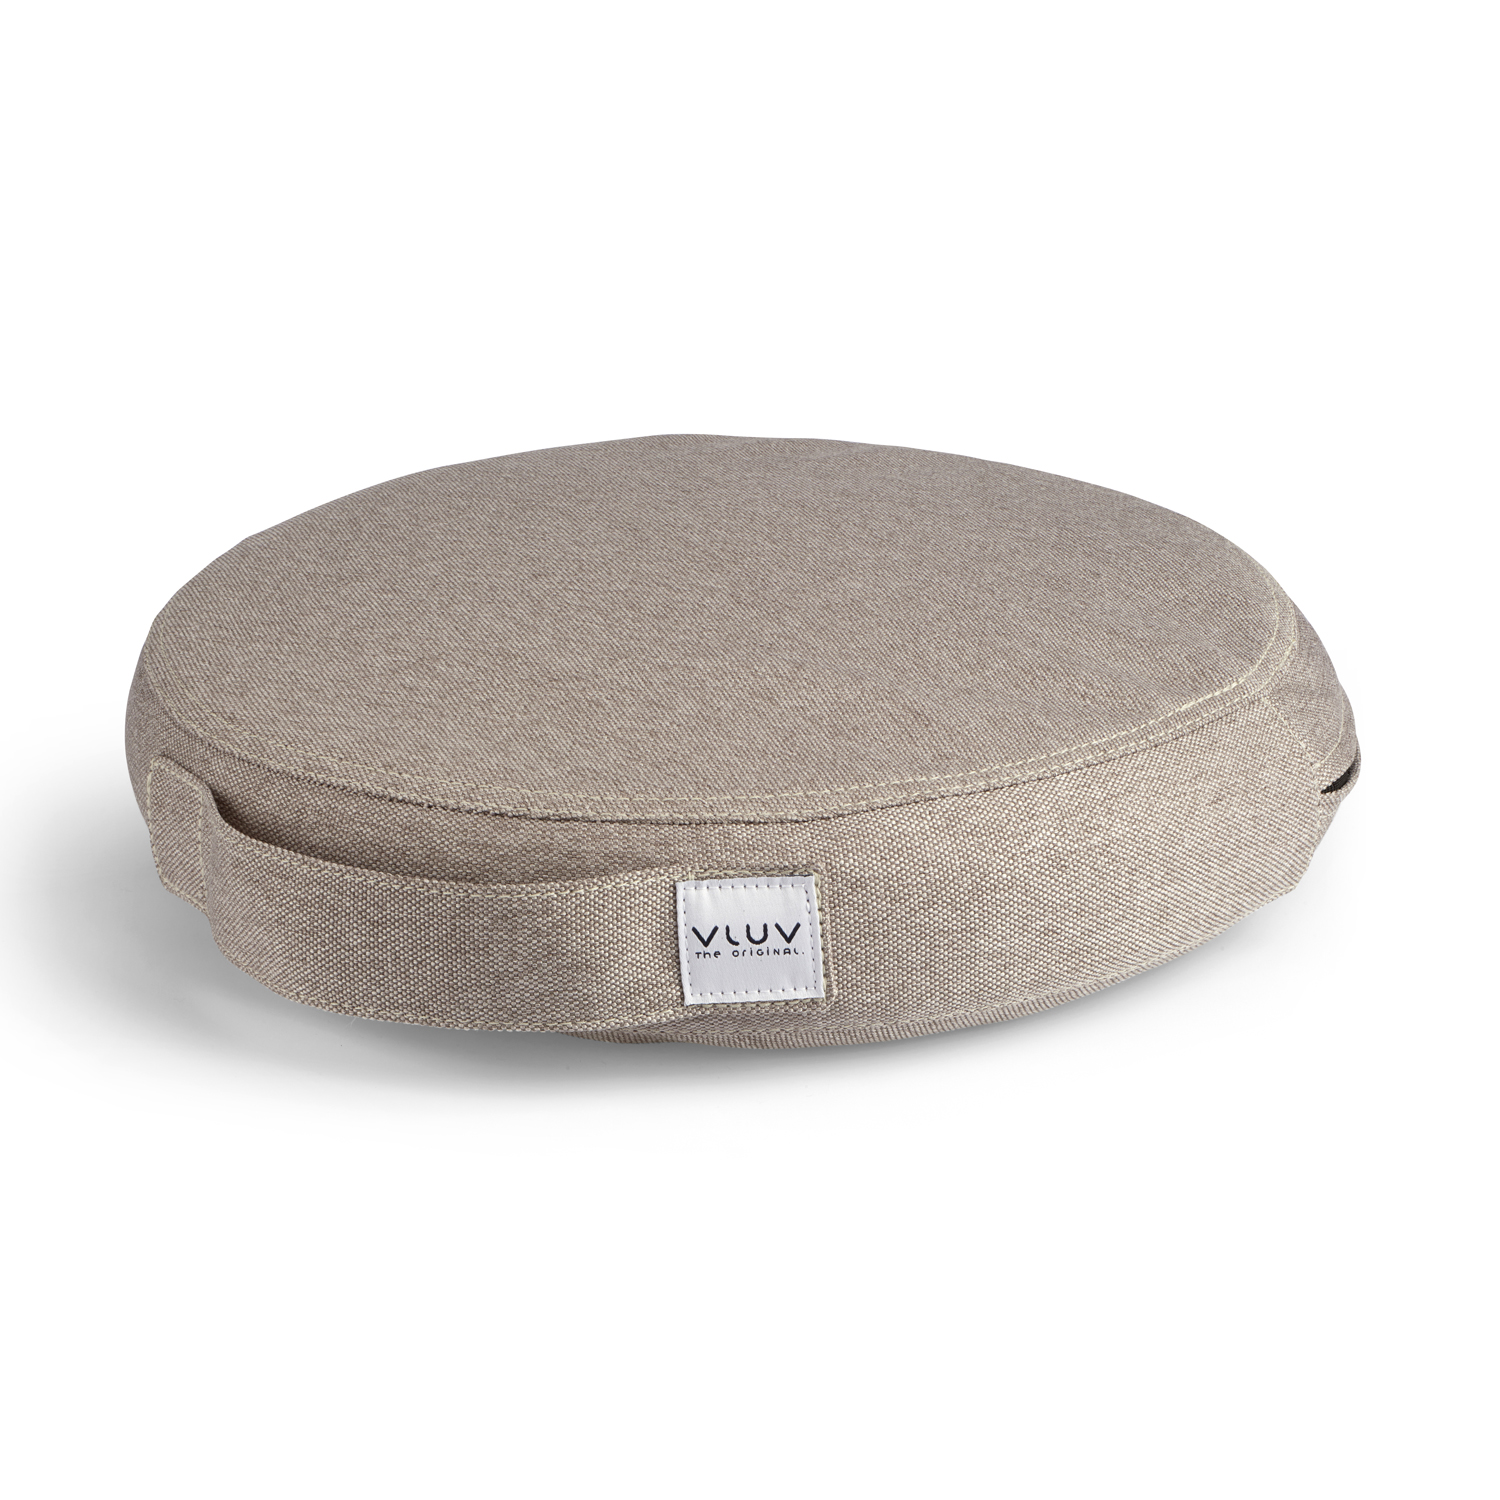 VLUV Balancekissen PIL&PED LEIV stone für gesundes und aufrechtes Sitzen